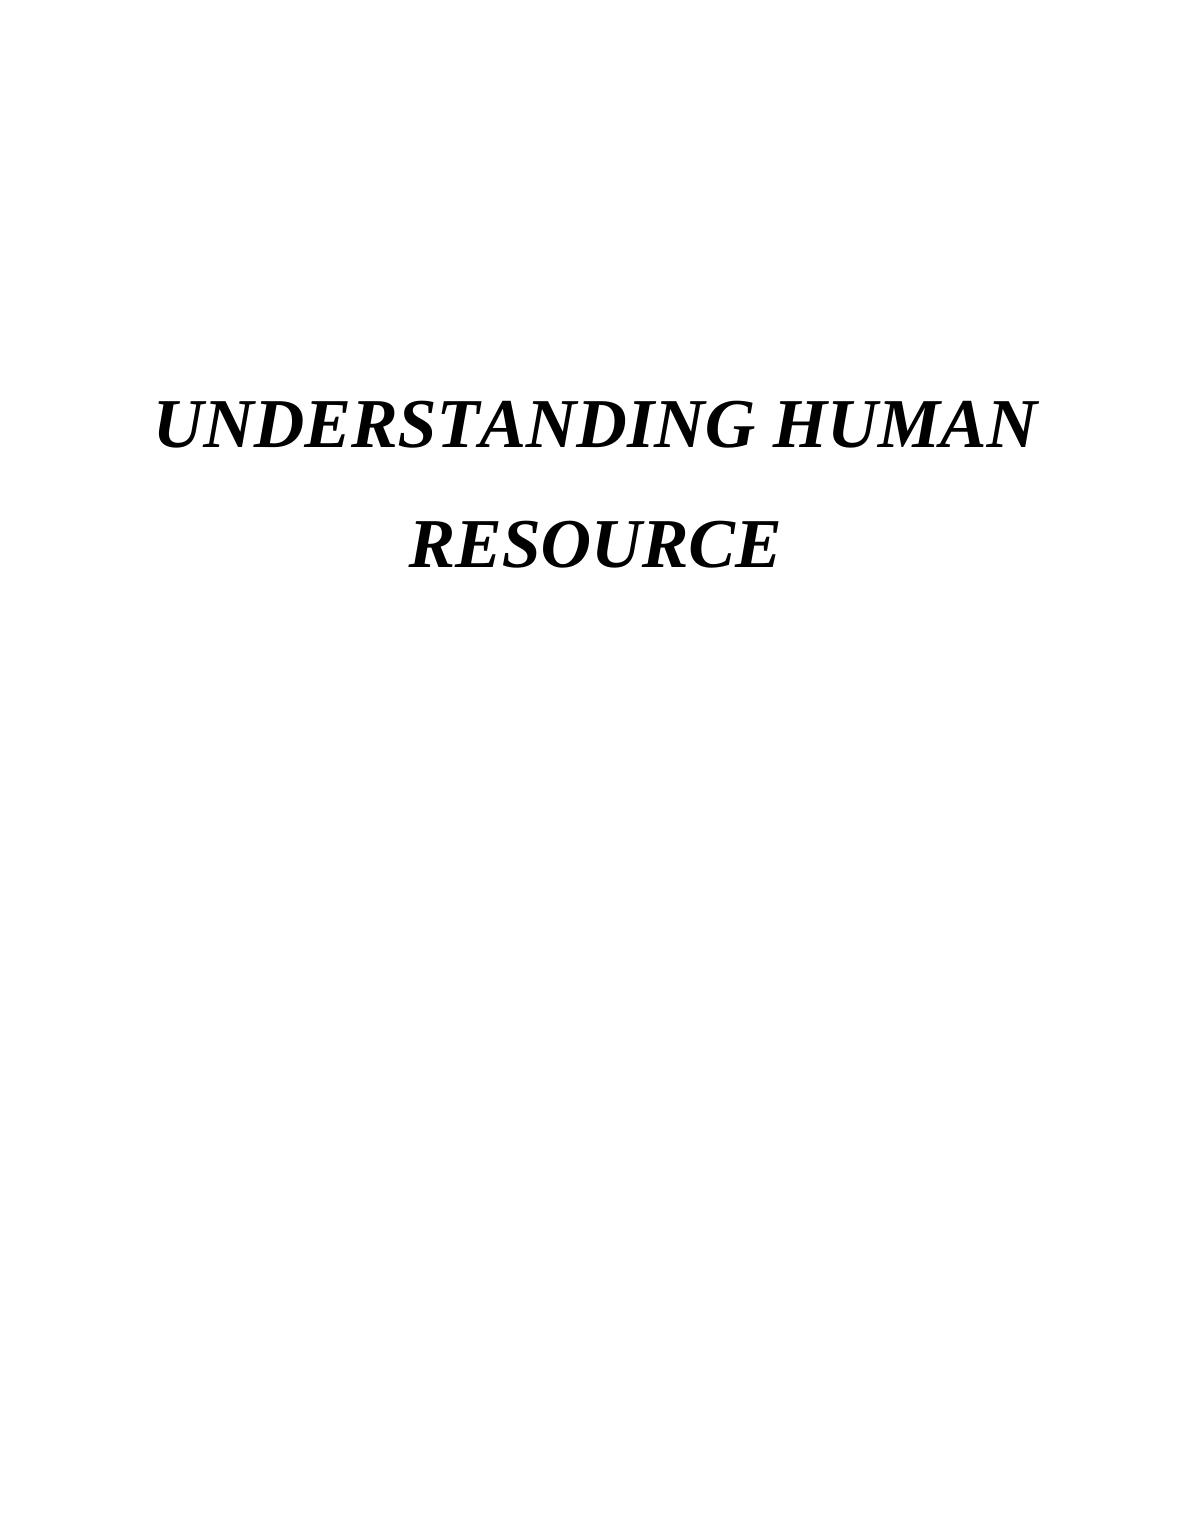 Report on Understanding Human Resource - Syngenta_1